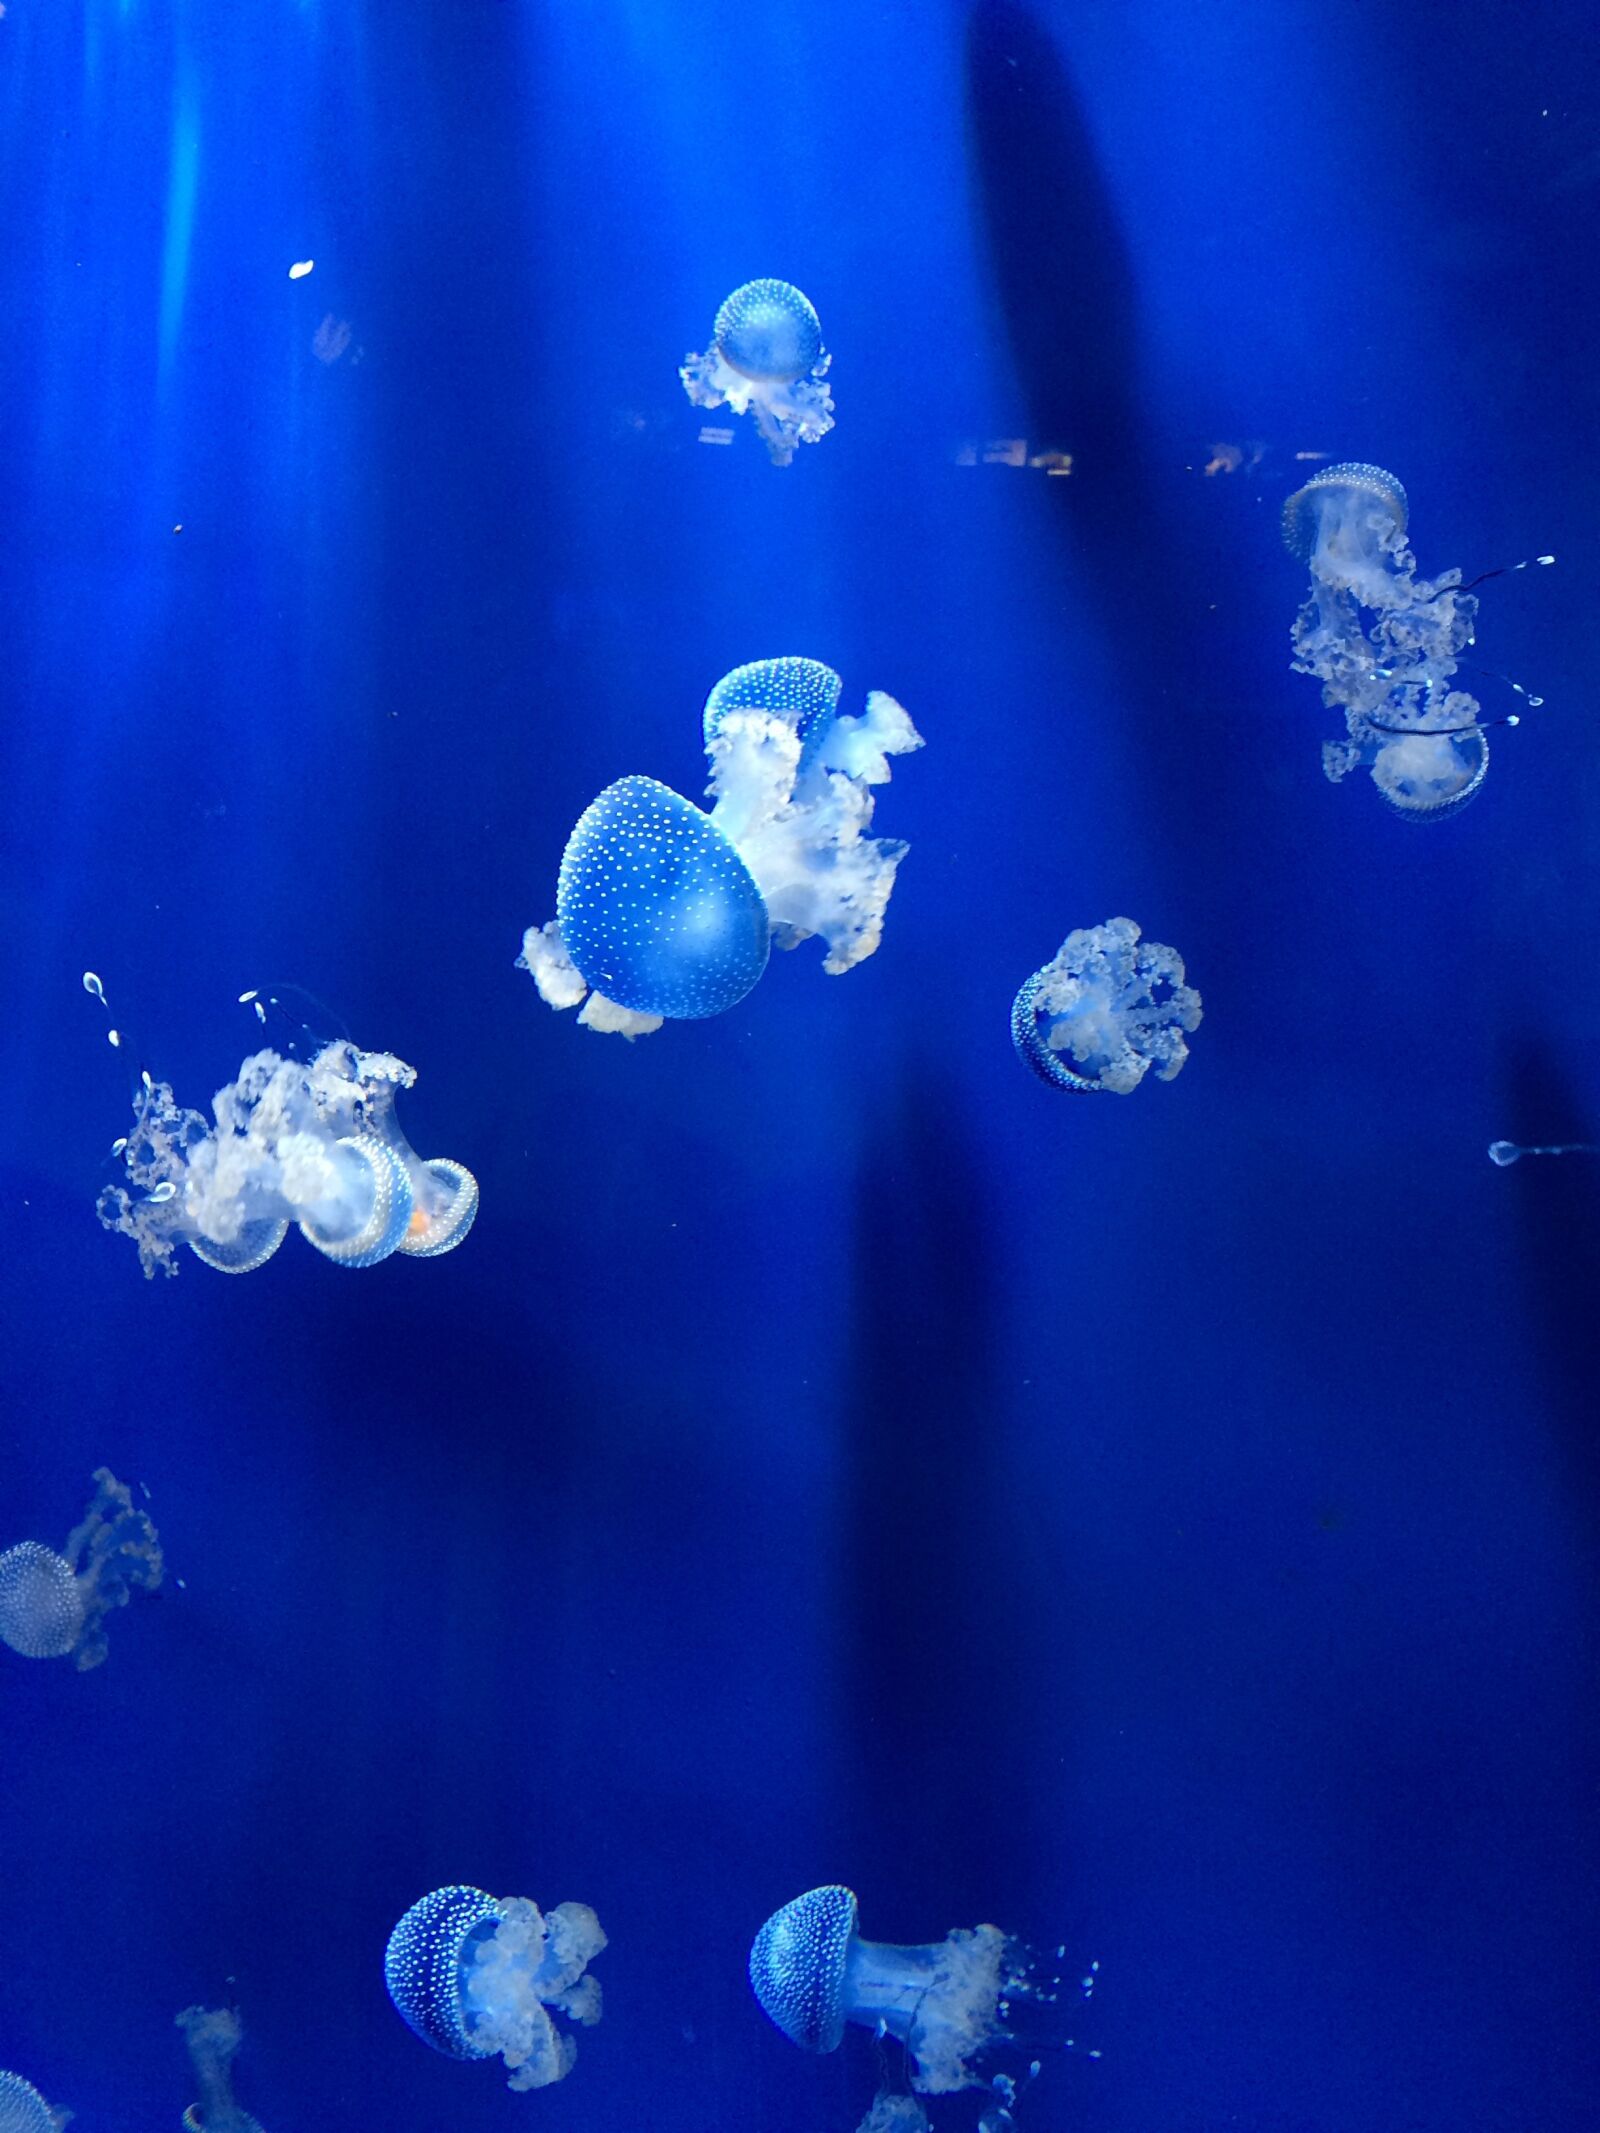 Apple iPhone 5s sample photo. Jellyfish, aquarium, genoa aquarium photography